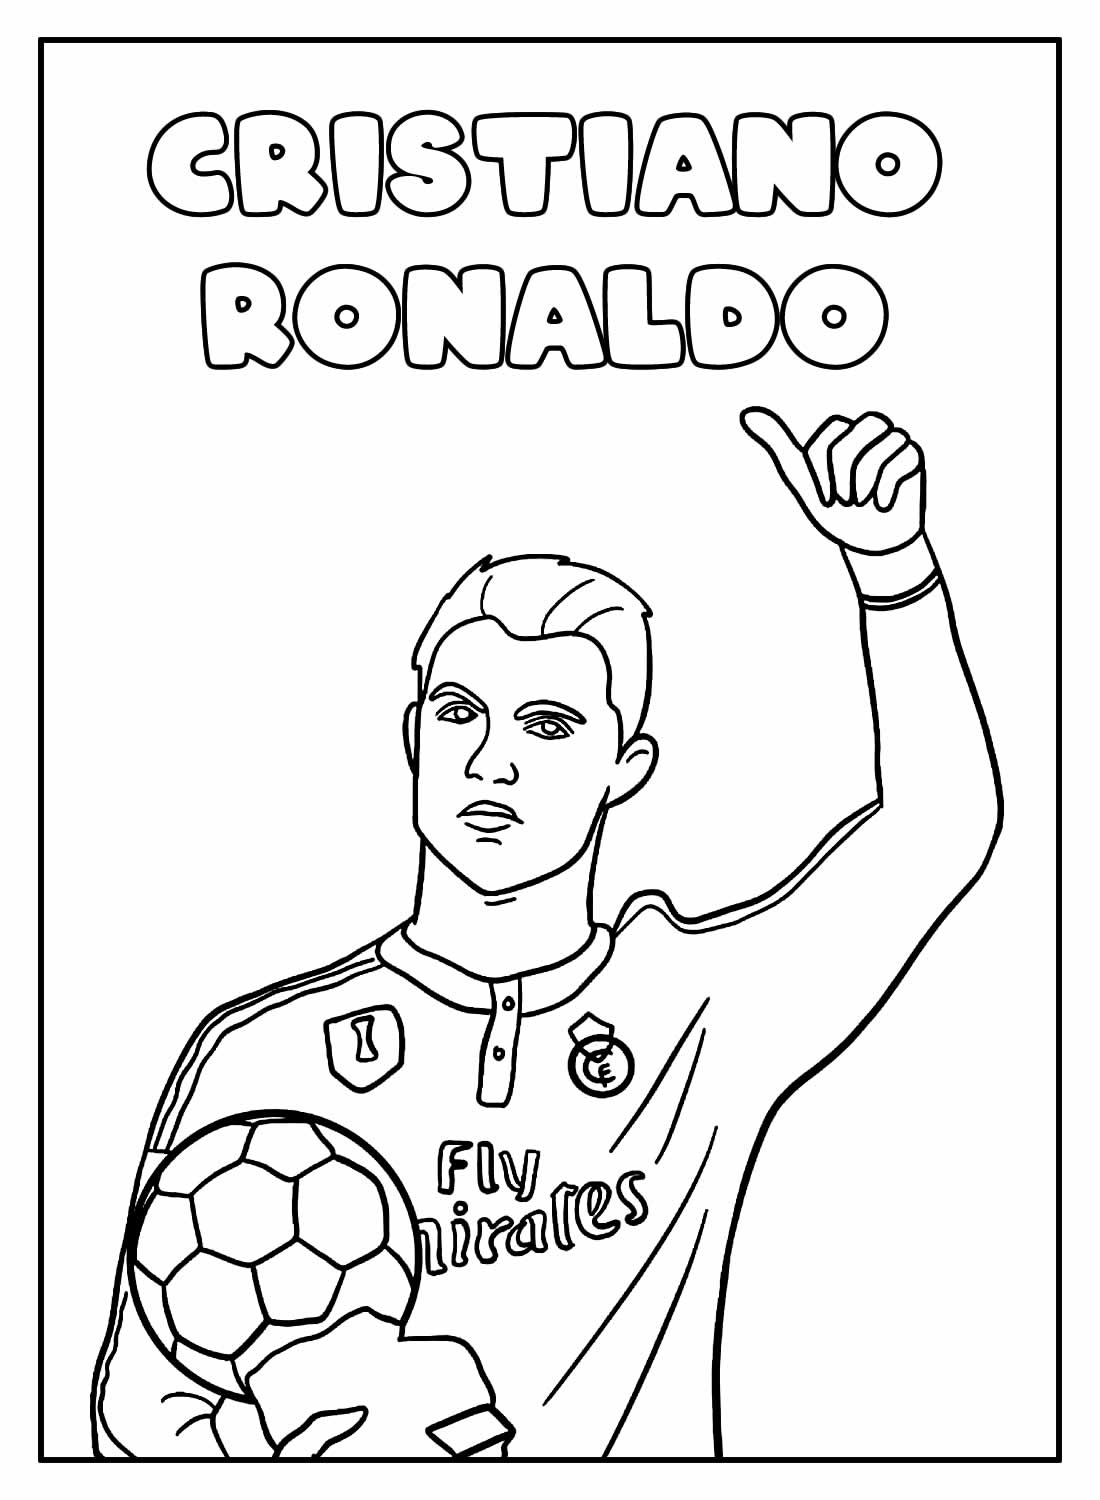 Desenho Educativo do Cristiano Ronaldo para colorir